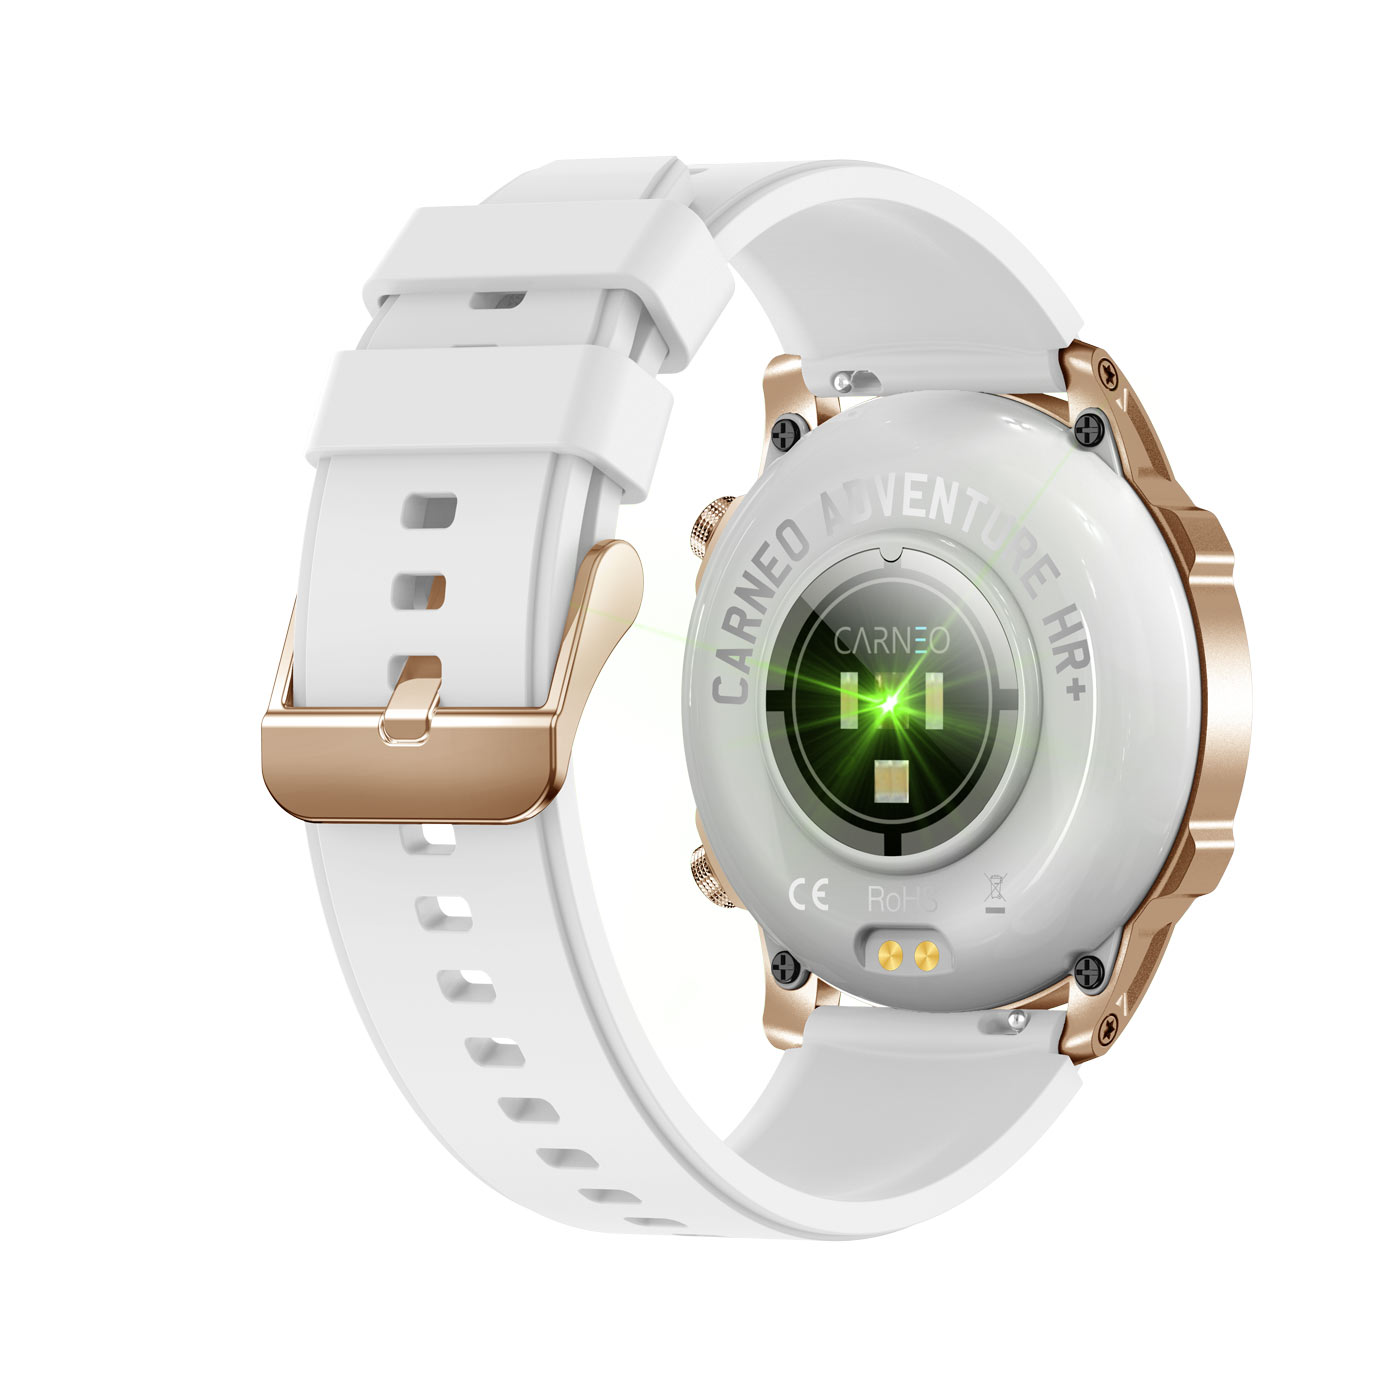 Adventure Smartwatch, gold CARNEO HR+ gold,